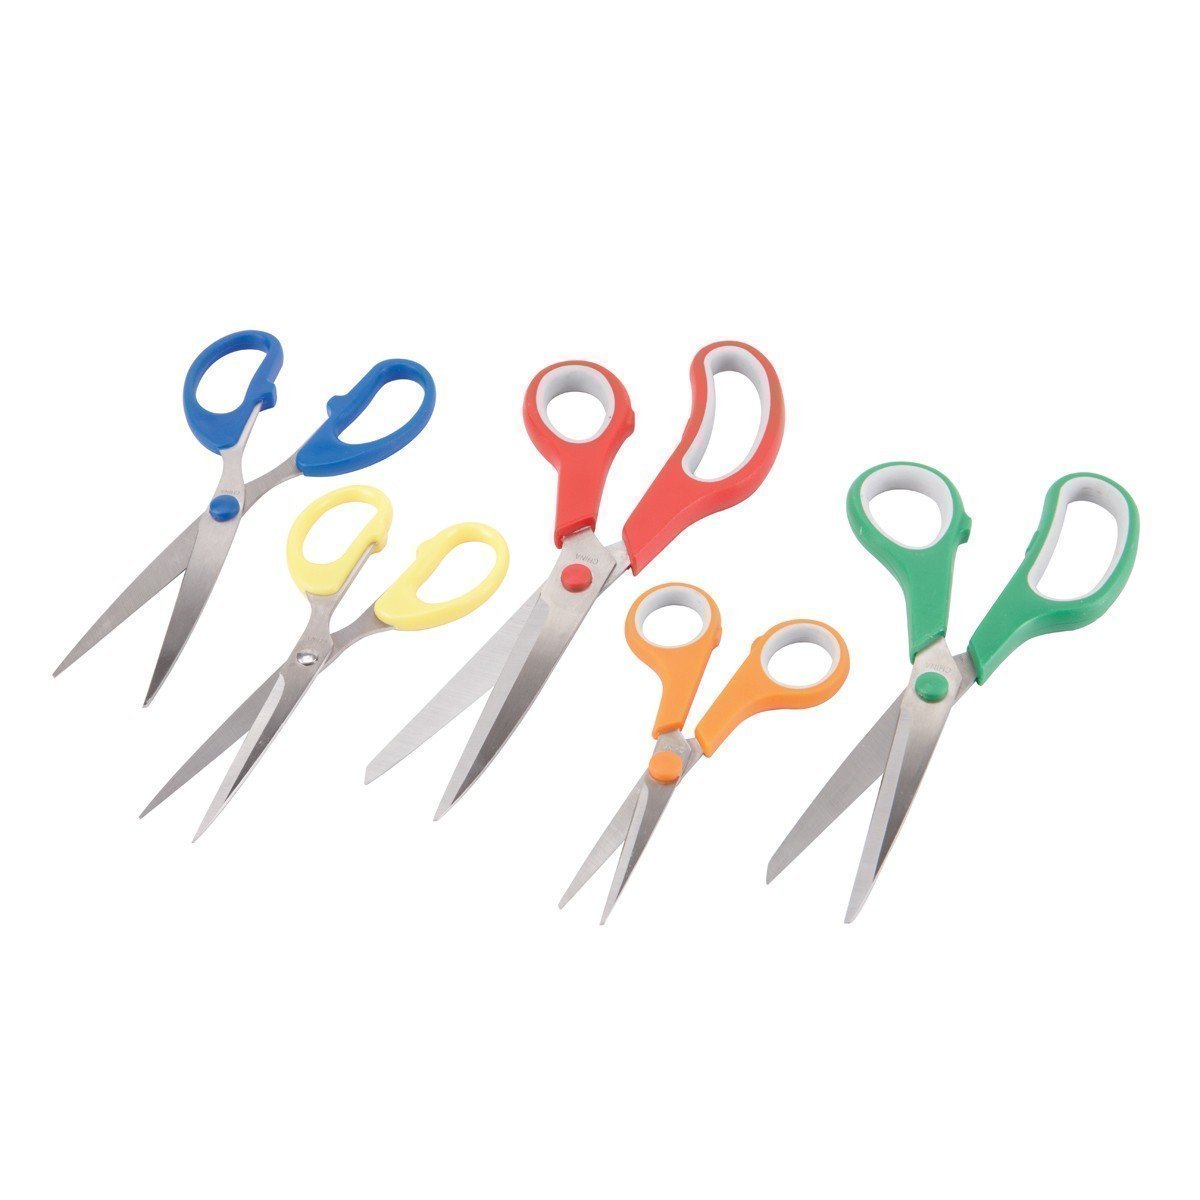 Scissor Set-knives & cutting tools-Tool Mart Inc.